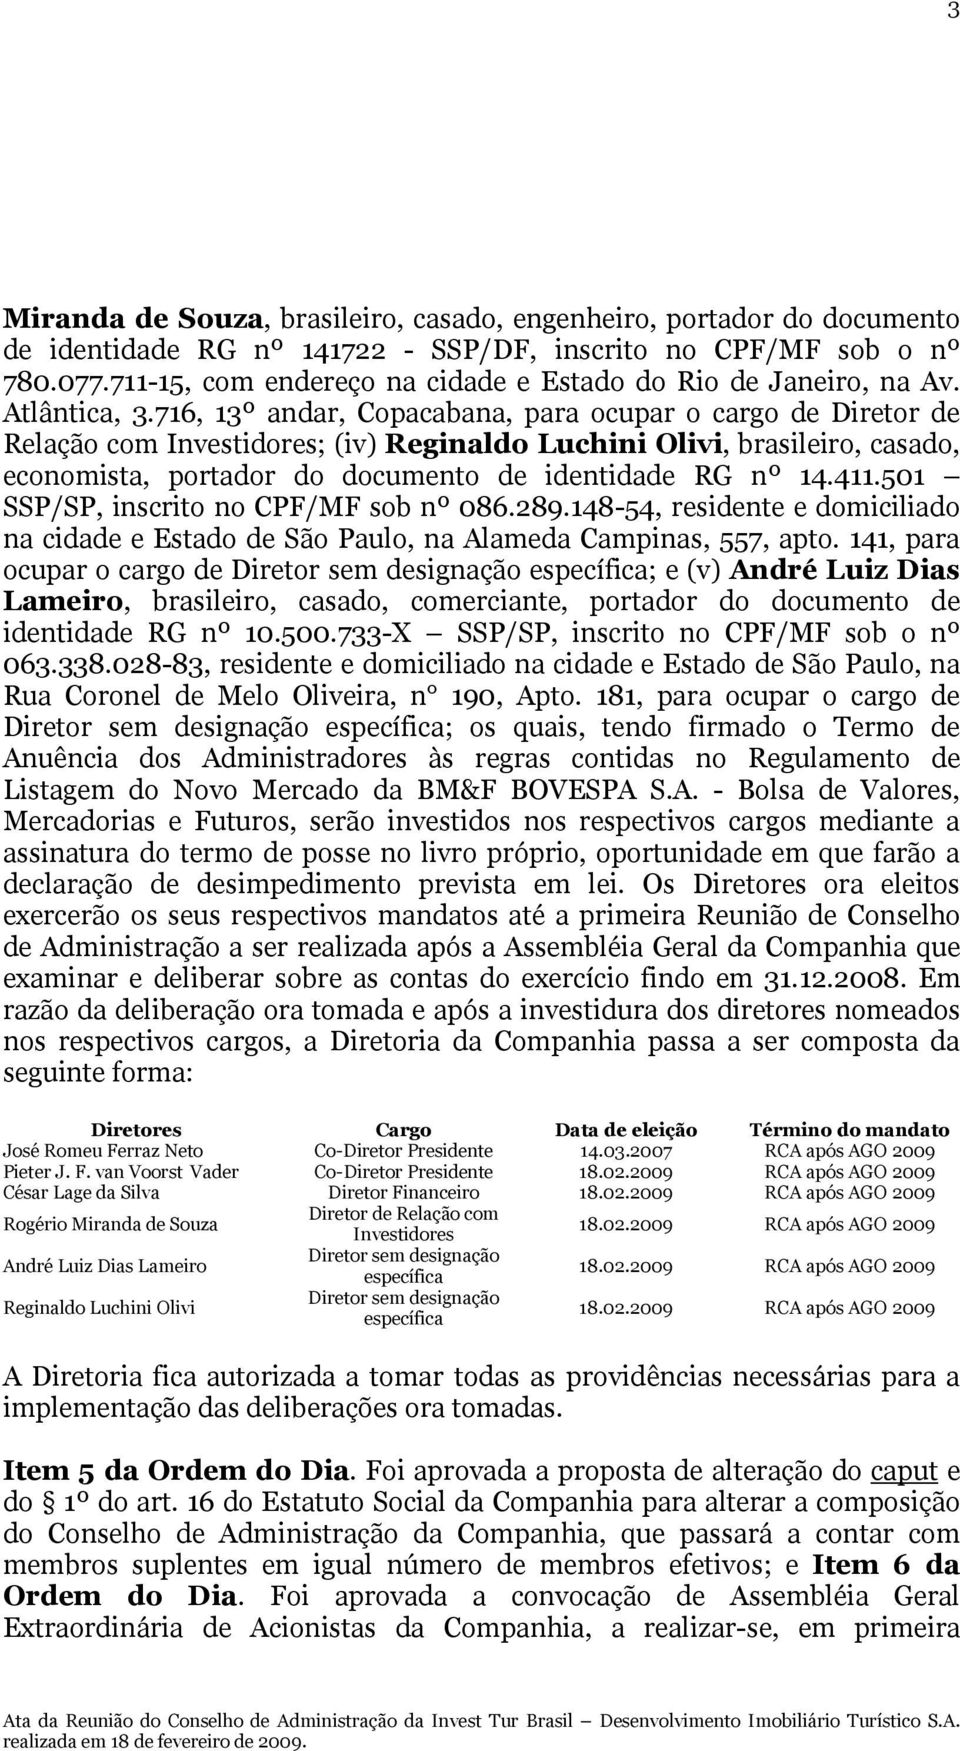 716, 13º andar, Copacabana, para ocupar o cargo de Diretor de Relação com Investidores; (iv) Reginaldo Luchini Olivi, brasileiro, casado, economista, portador do documento de identidade RG nº 14.411.